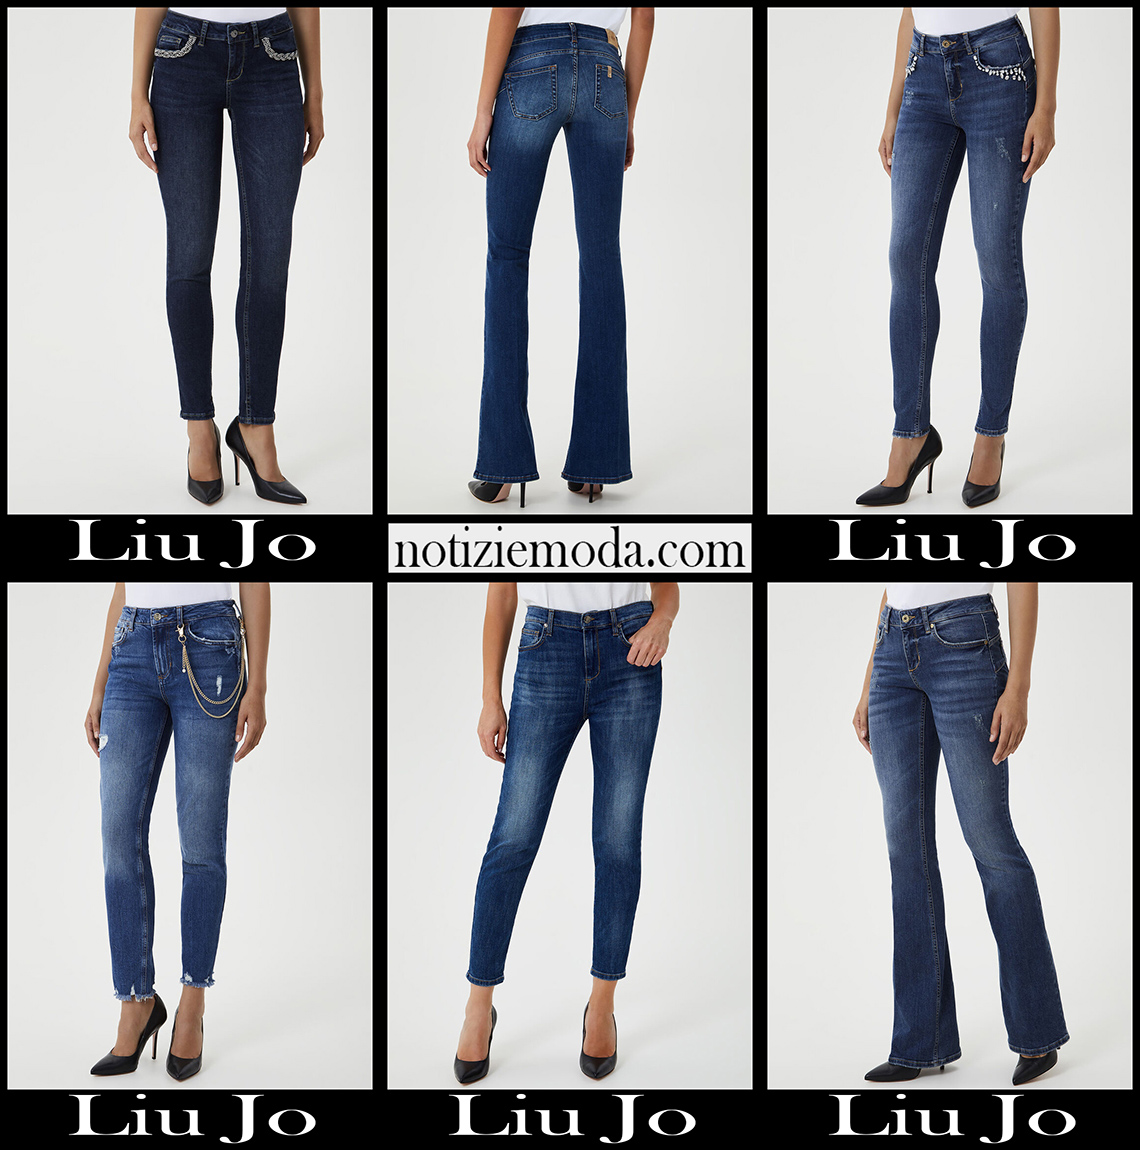 Nuovi arrivi jeans Liu Jo 2021 autunno inverno donna